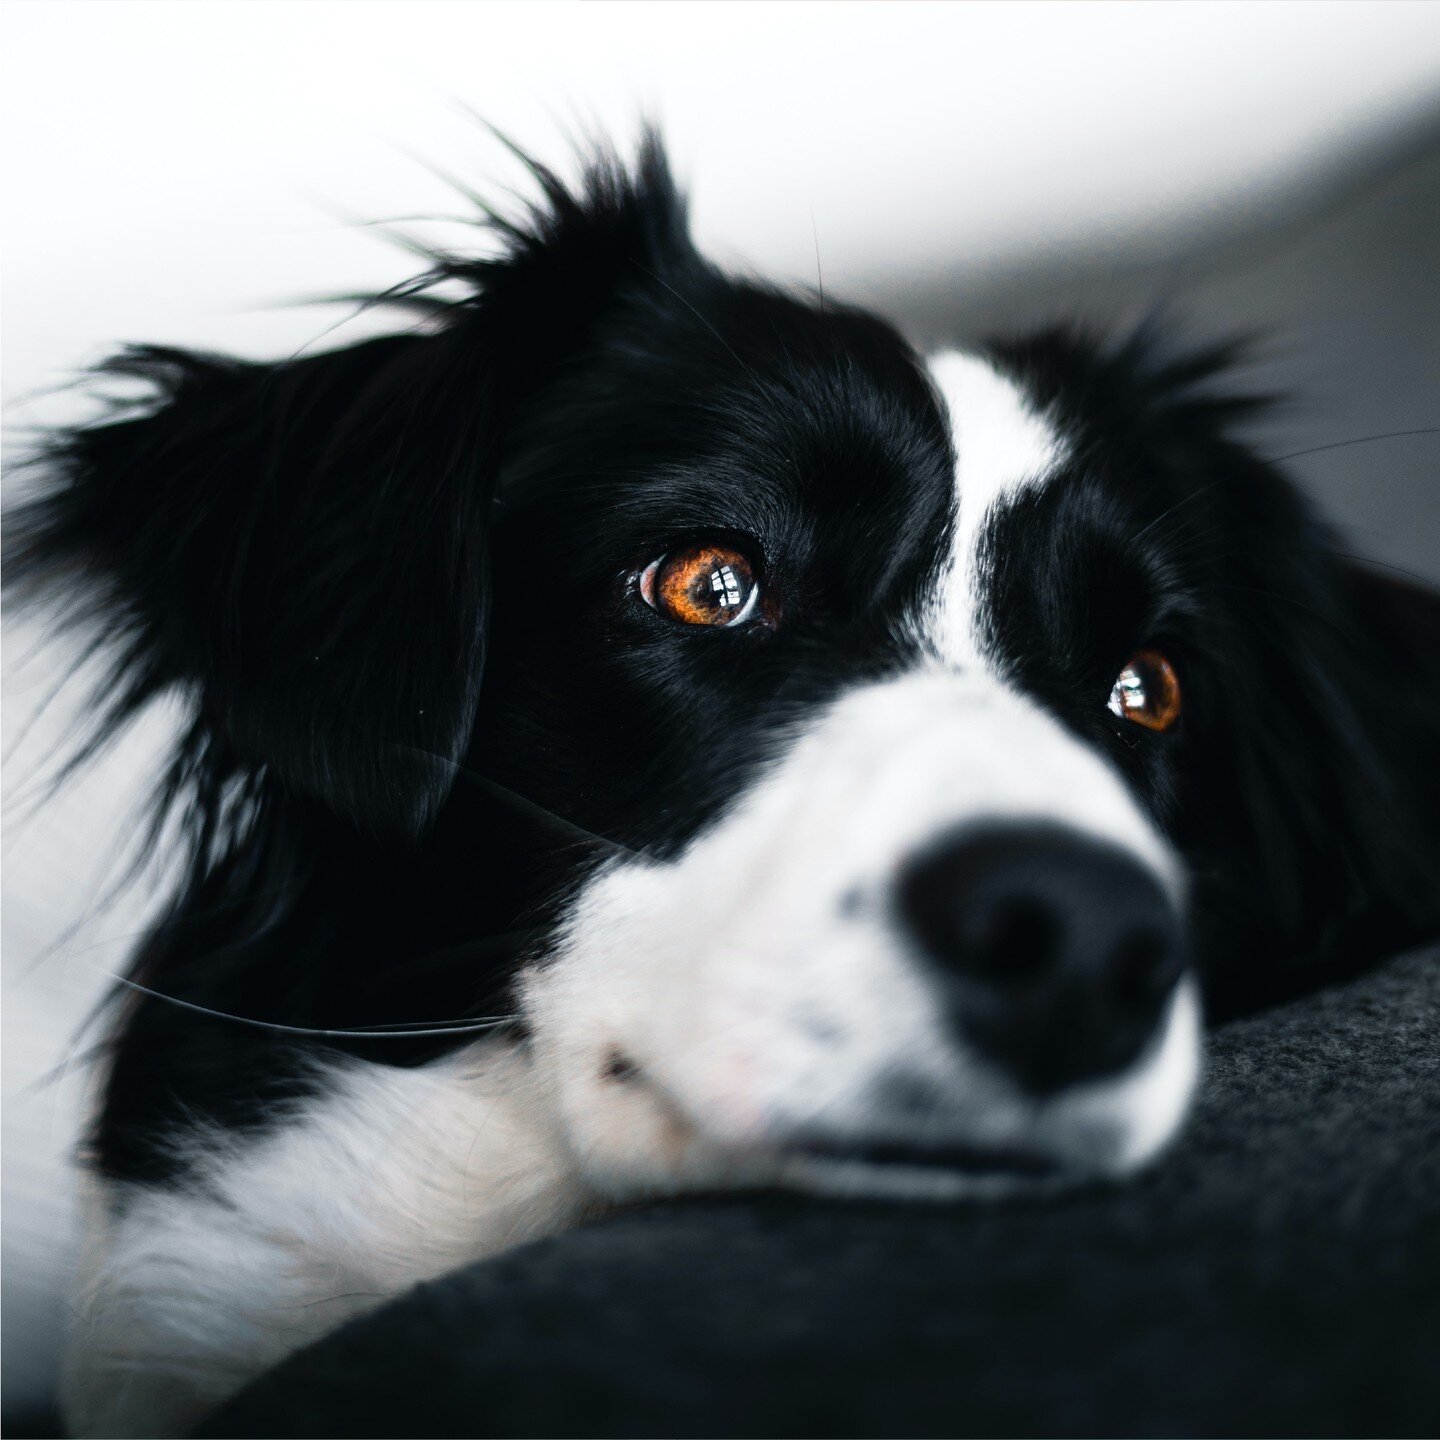 Davon hat auch euer Hund getr&auml;umt: Stressfreie Tierarztbesuche! Bei Versp&auml;tungen oder Termin&auml;nderungen bekommt ihr Push-Benachrichtungen um lange Wartezeiten zu vermeiden. Und wenn doch mal kurz dauert, haben wir unsere Wartezimmer so 